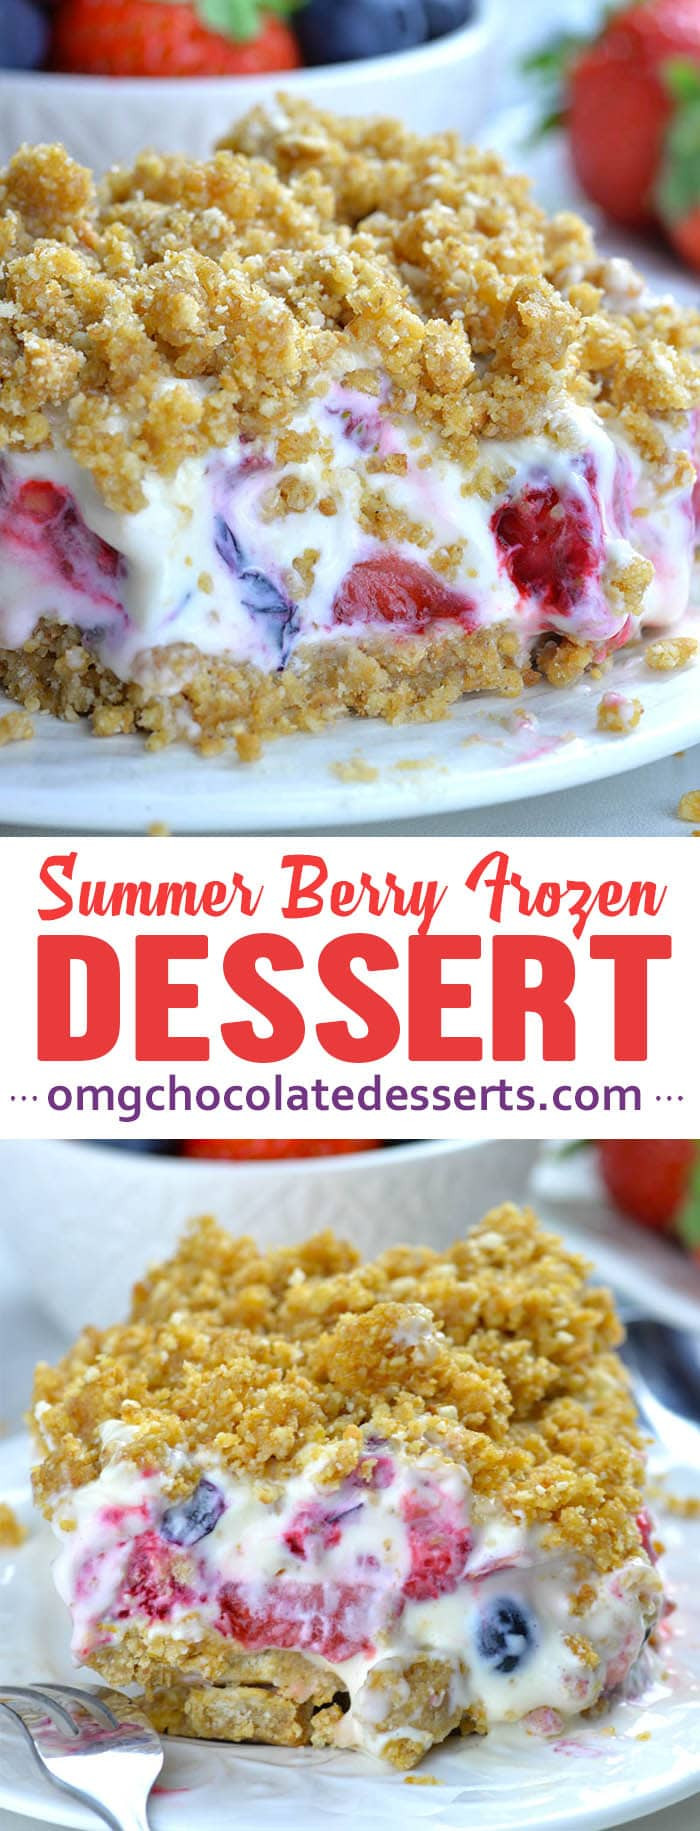 Summer Dessert Recipe
 Summer Berry Frozen Dessert